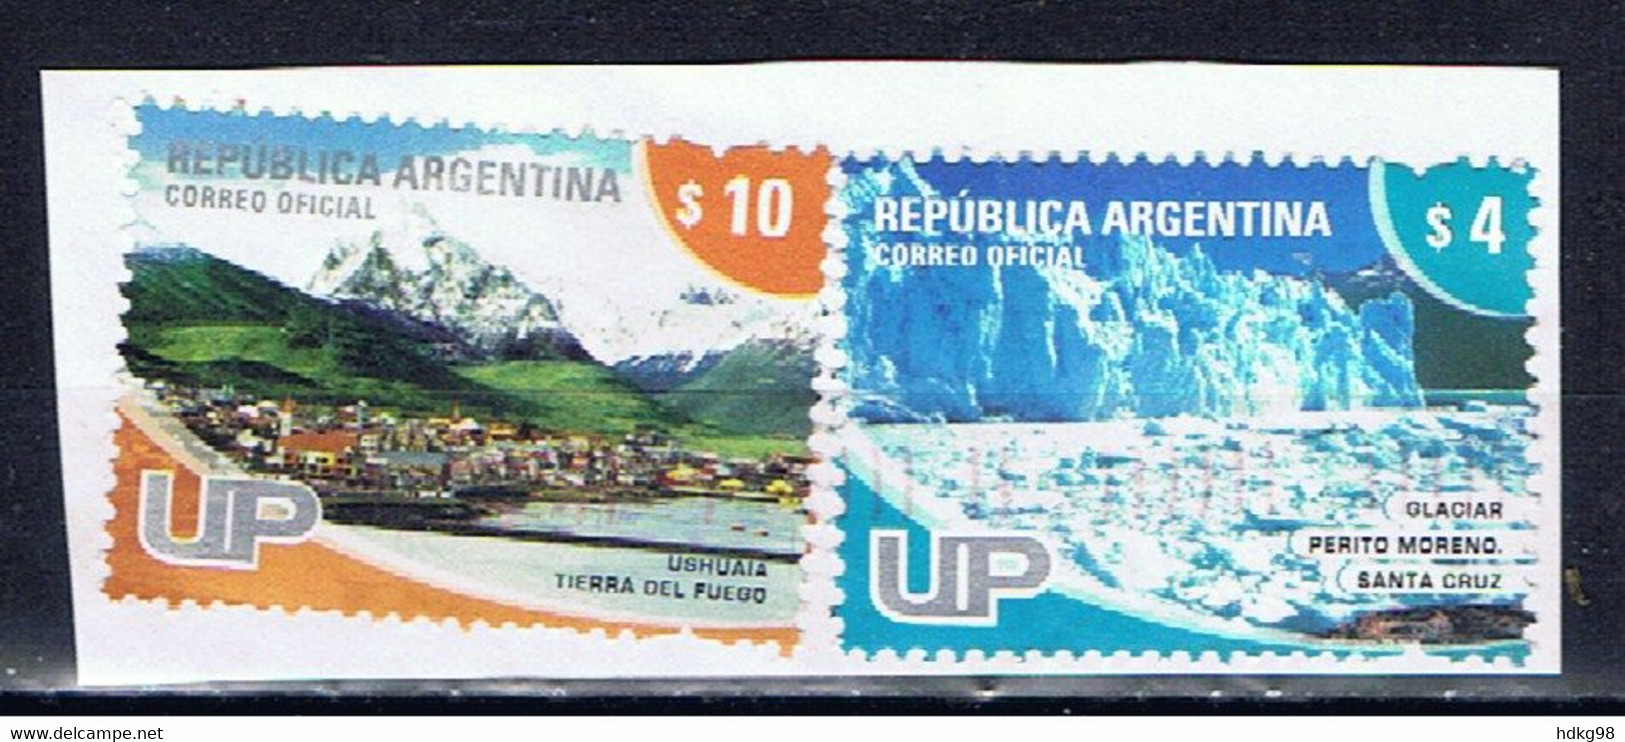 RA+ Argentinien 2005 2008 Mi 3012 3230 Gletscher, Ushuaia - Gebraucht